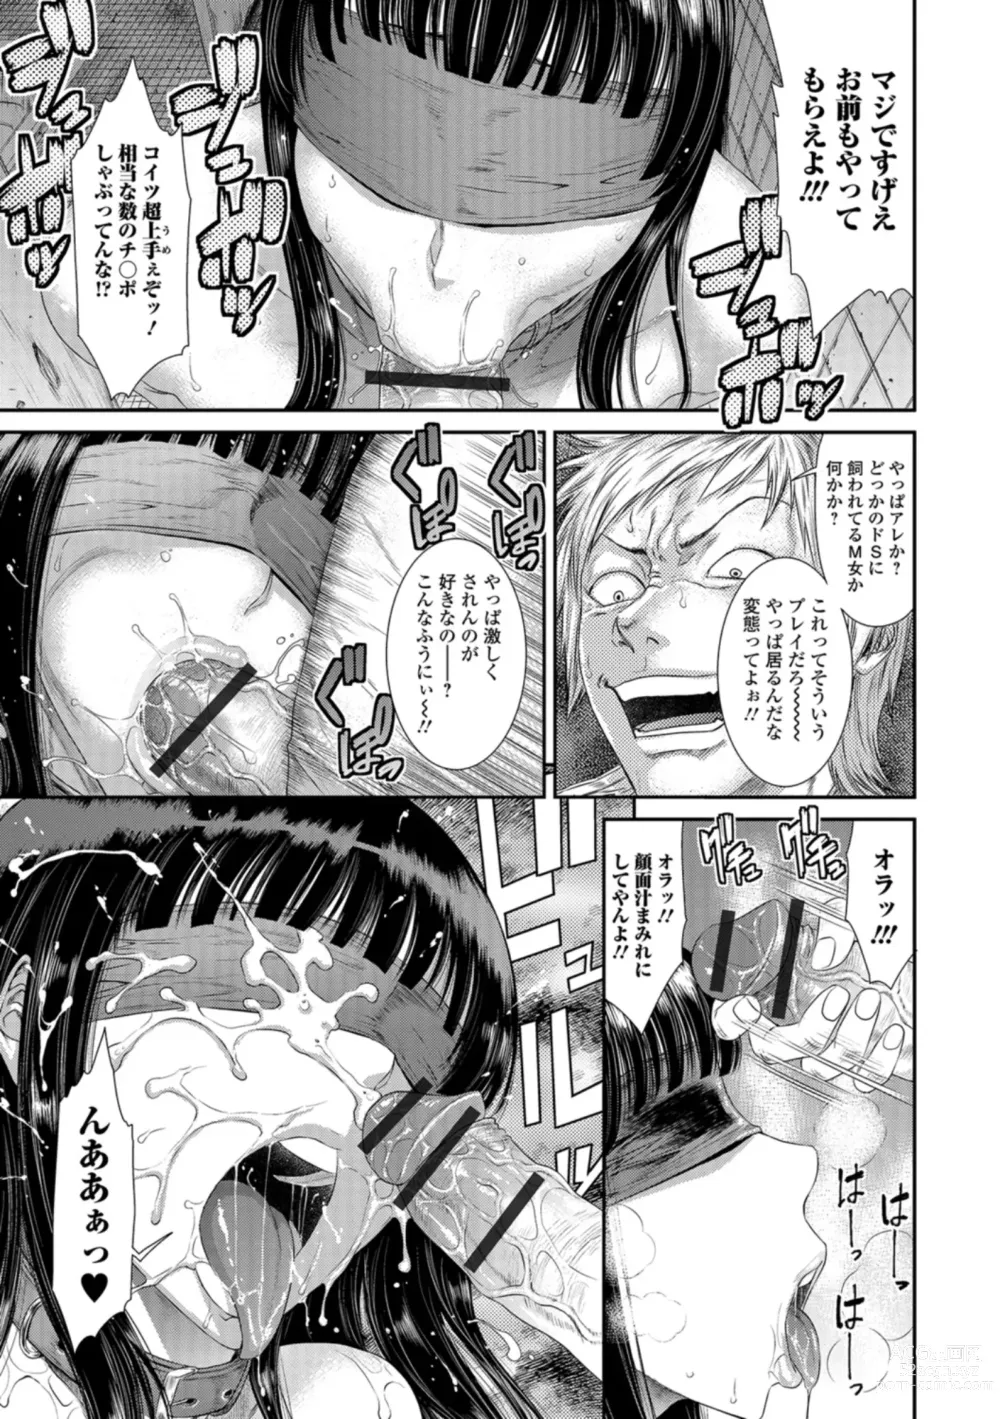 Page 24 of manga Houkago Galhame Nikubenki